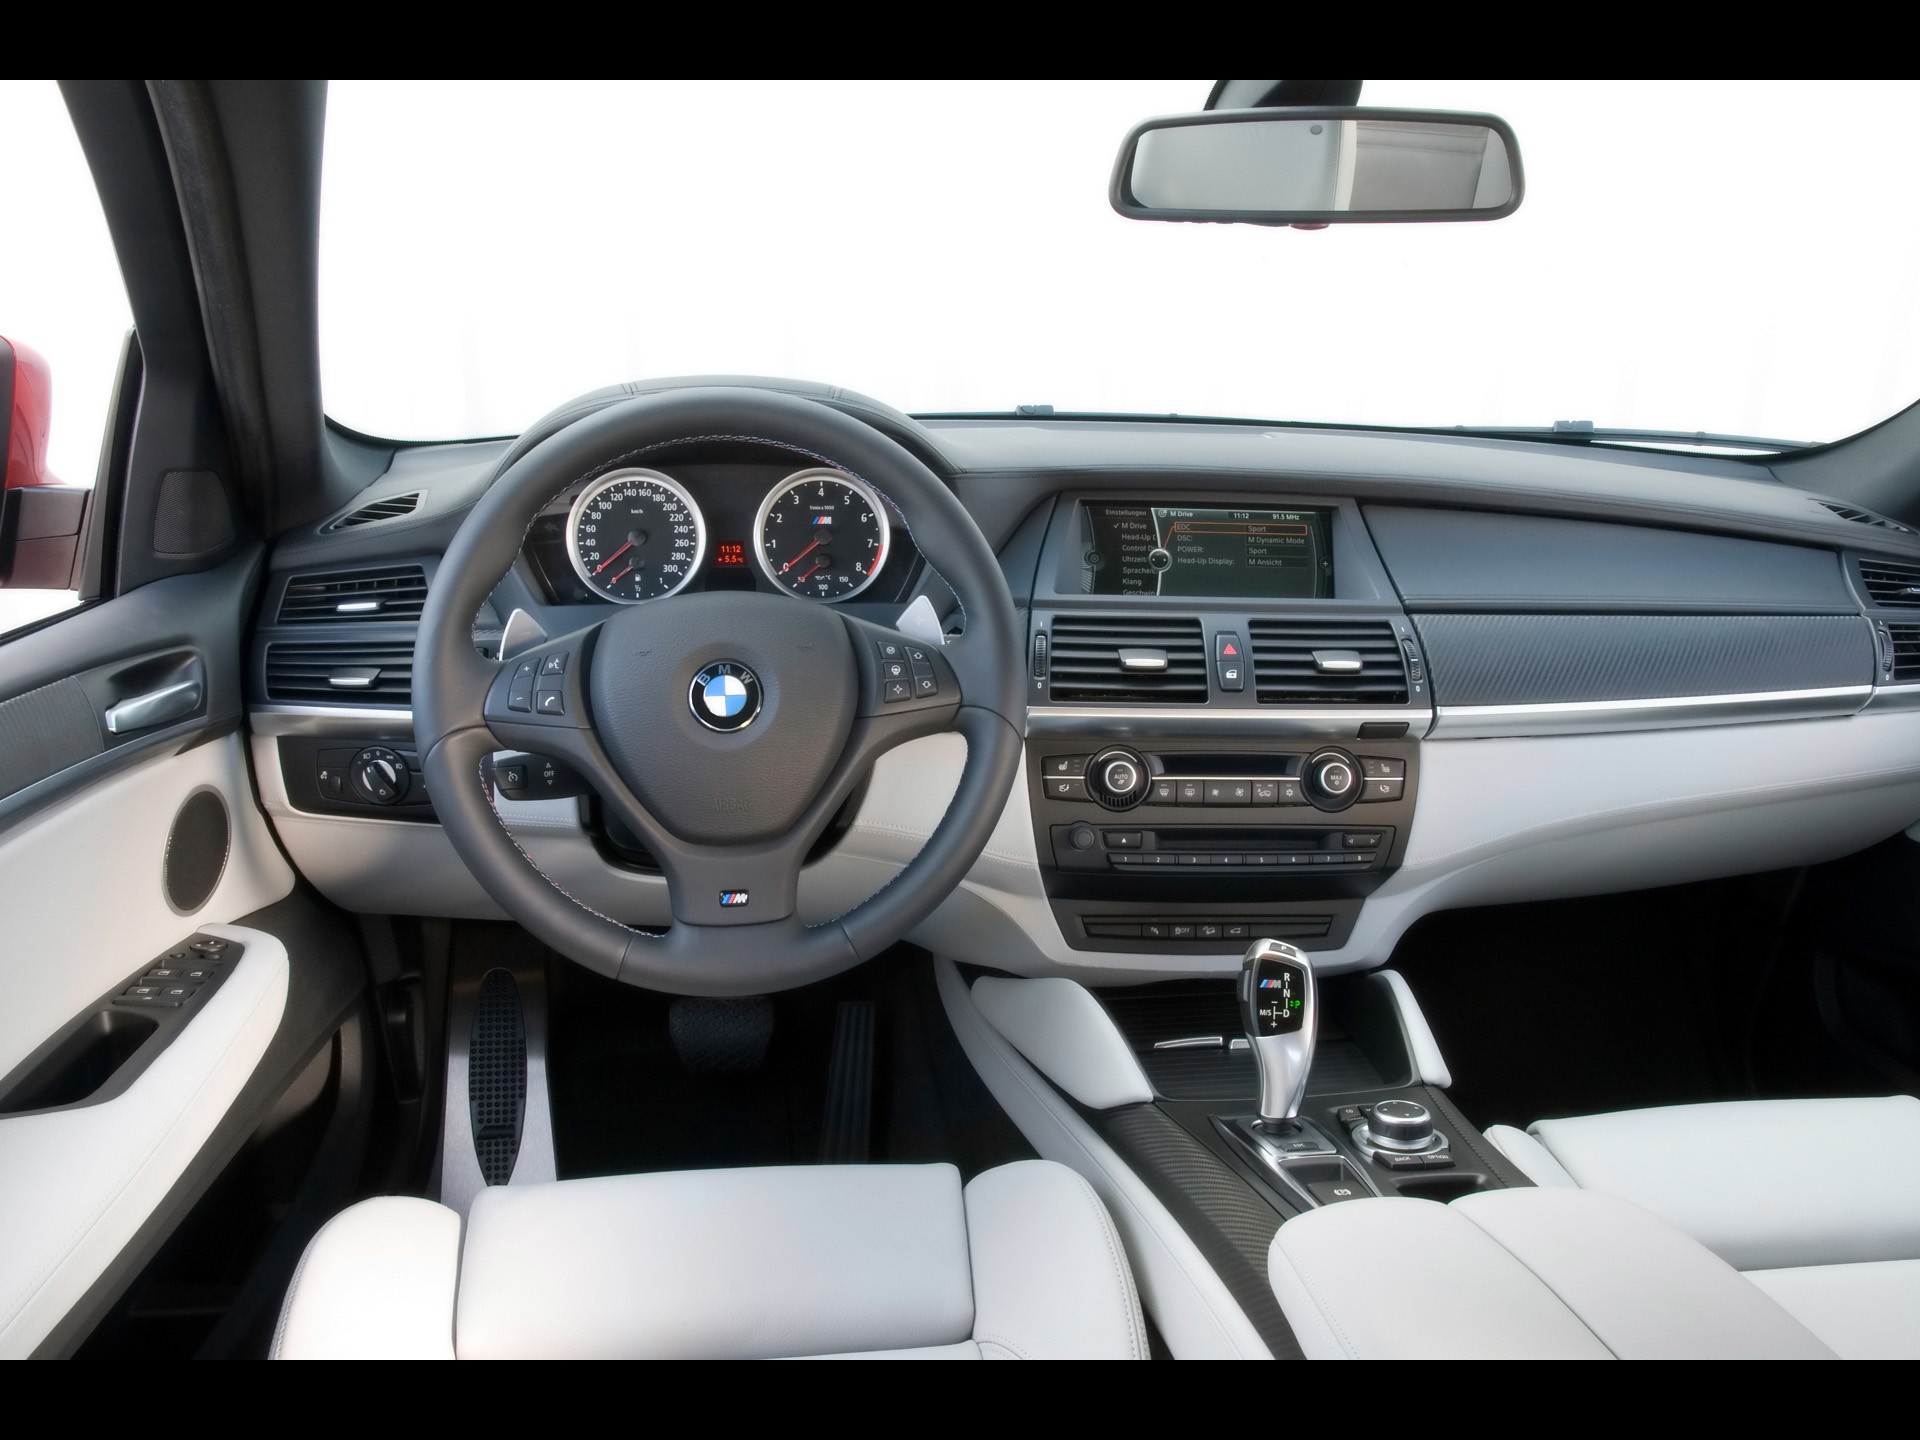 2009 BMW X6 M - Tableau de bord - 1920x1440 - Papier peint. Crédits d'image - BMW Group